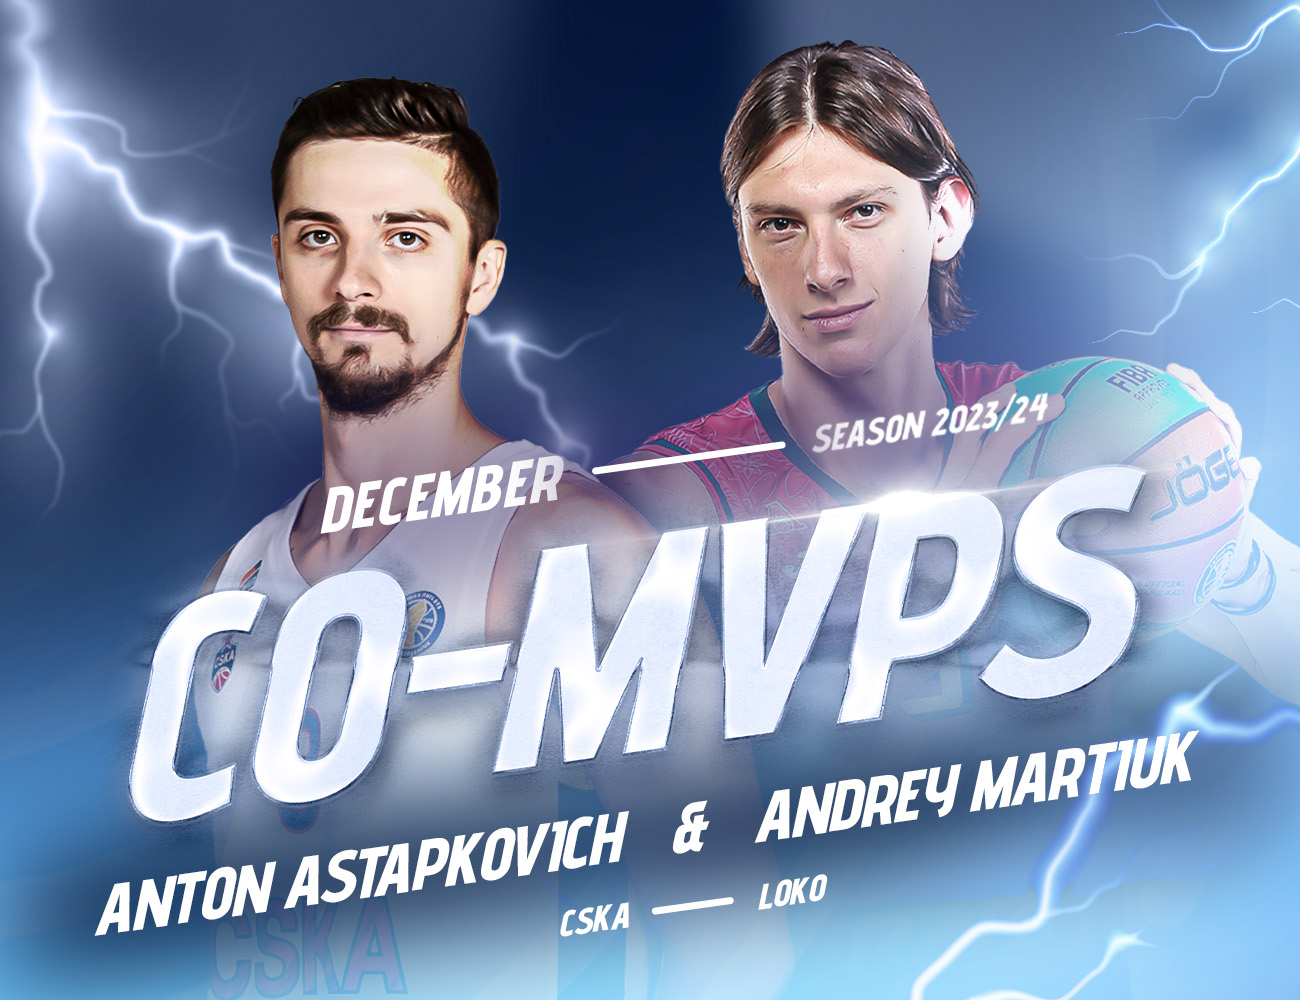 Антон Астапкович и Андрей Мартюк – самые ценные игроки декабря в сезоне 2023/24